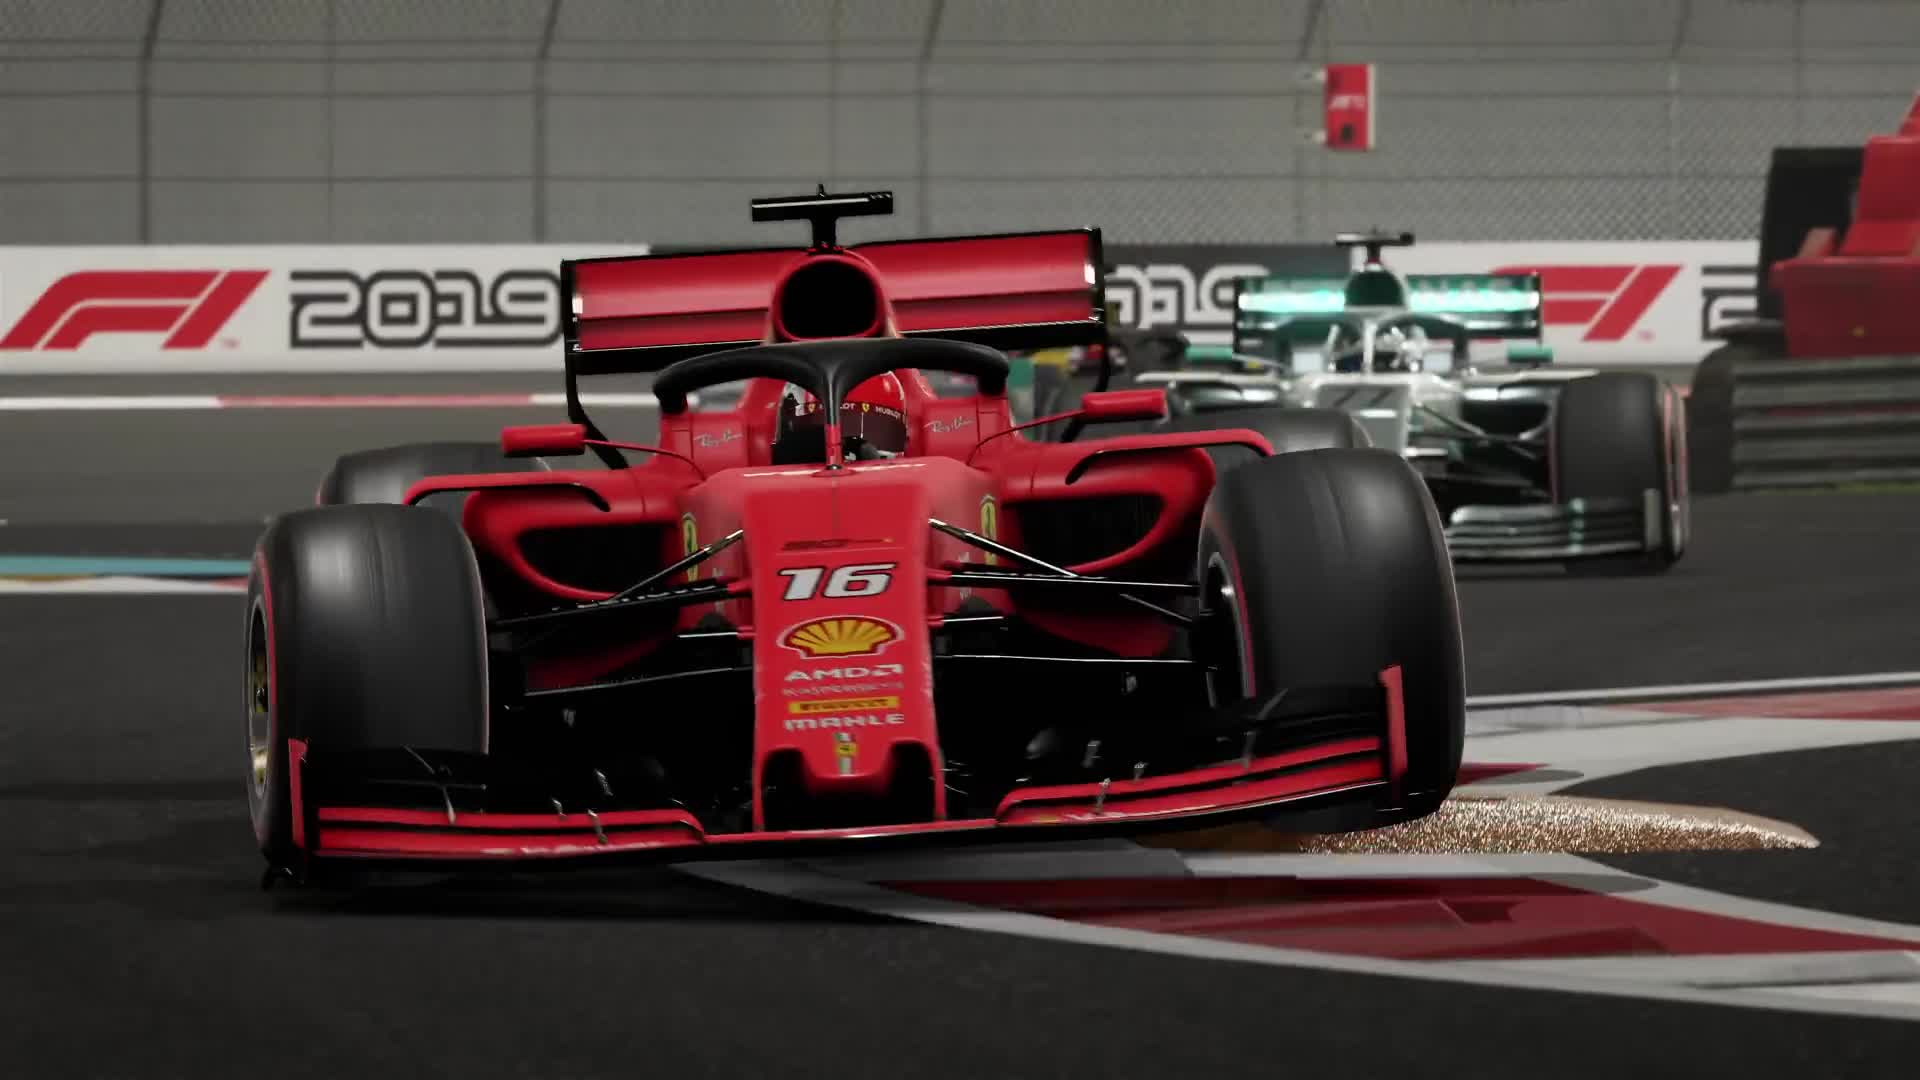 F1 Erster Gameplay Trailer Erschienen Details Zu Classic Cars